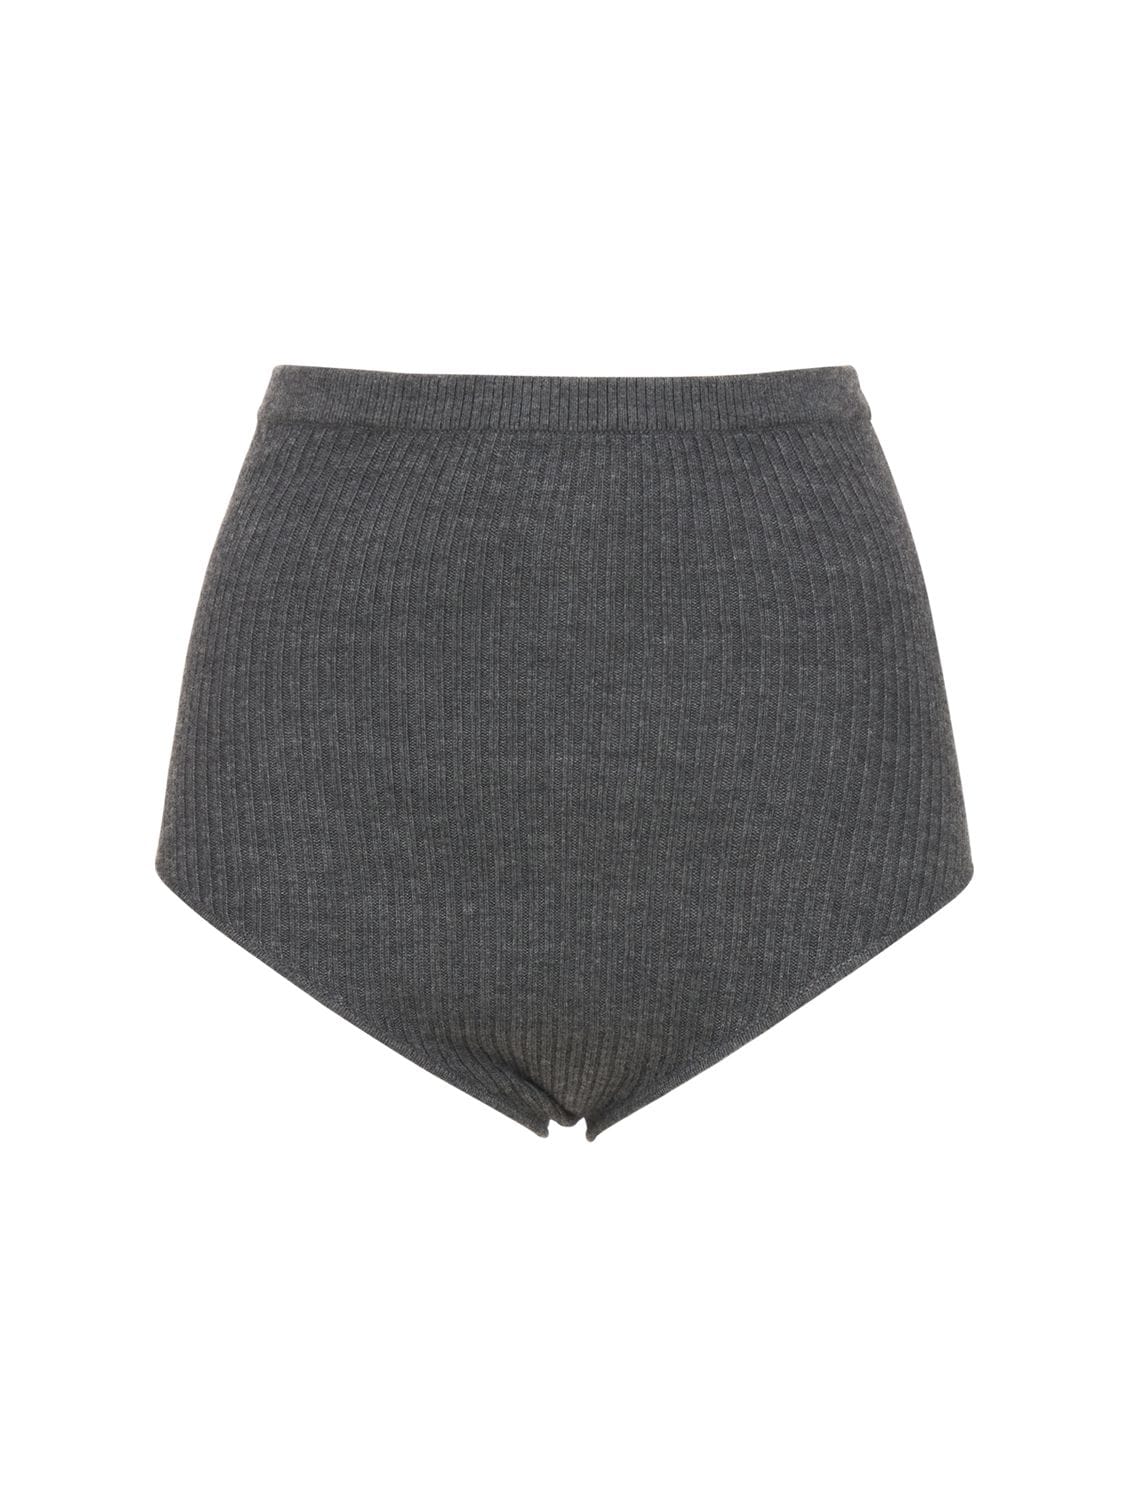 Arousa Wool & Cashmere Rib Knit Shorts